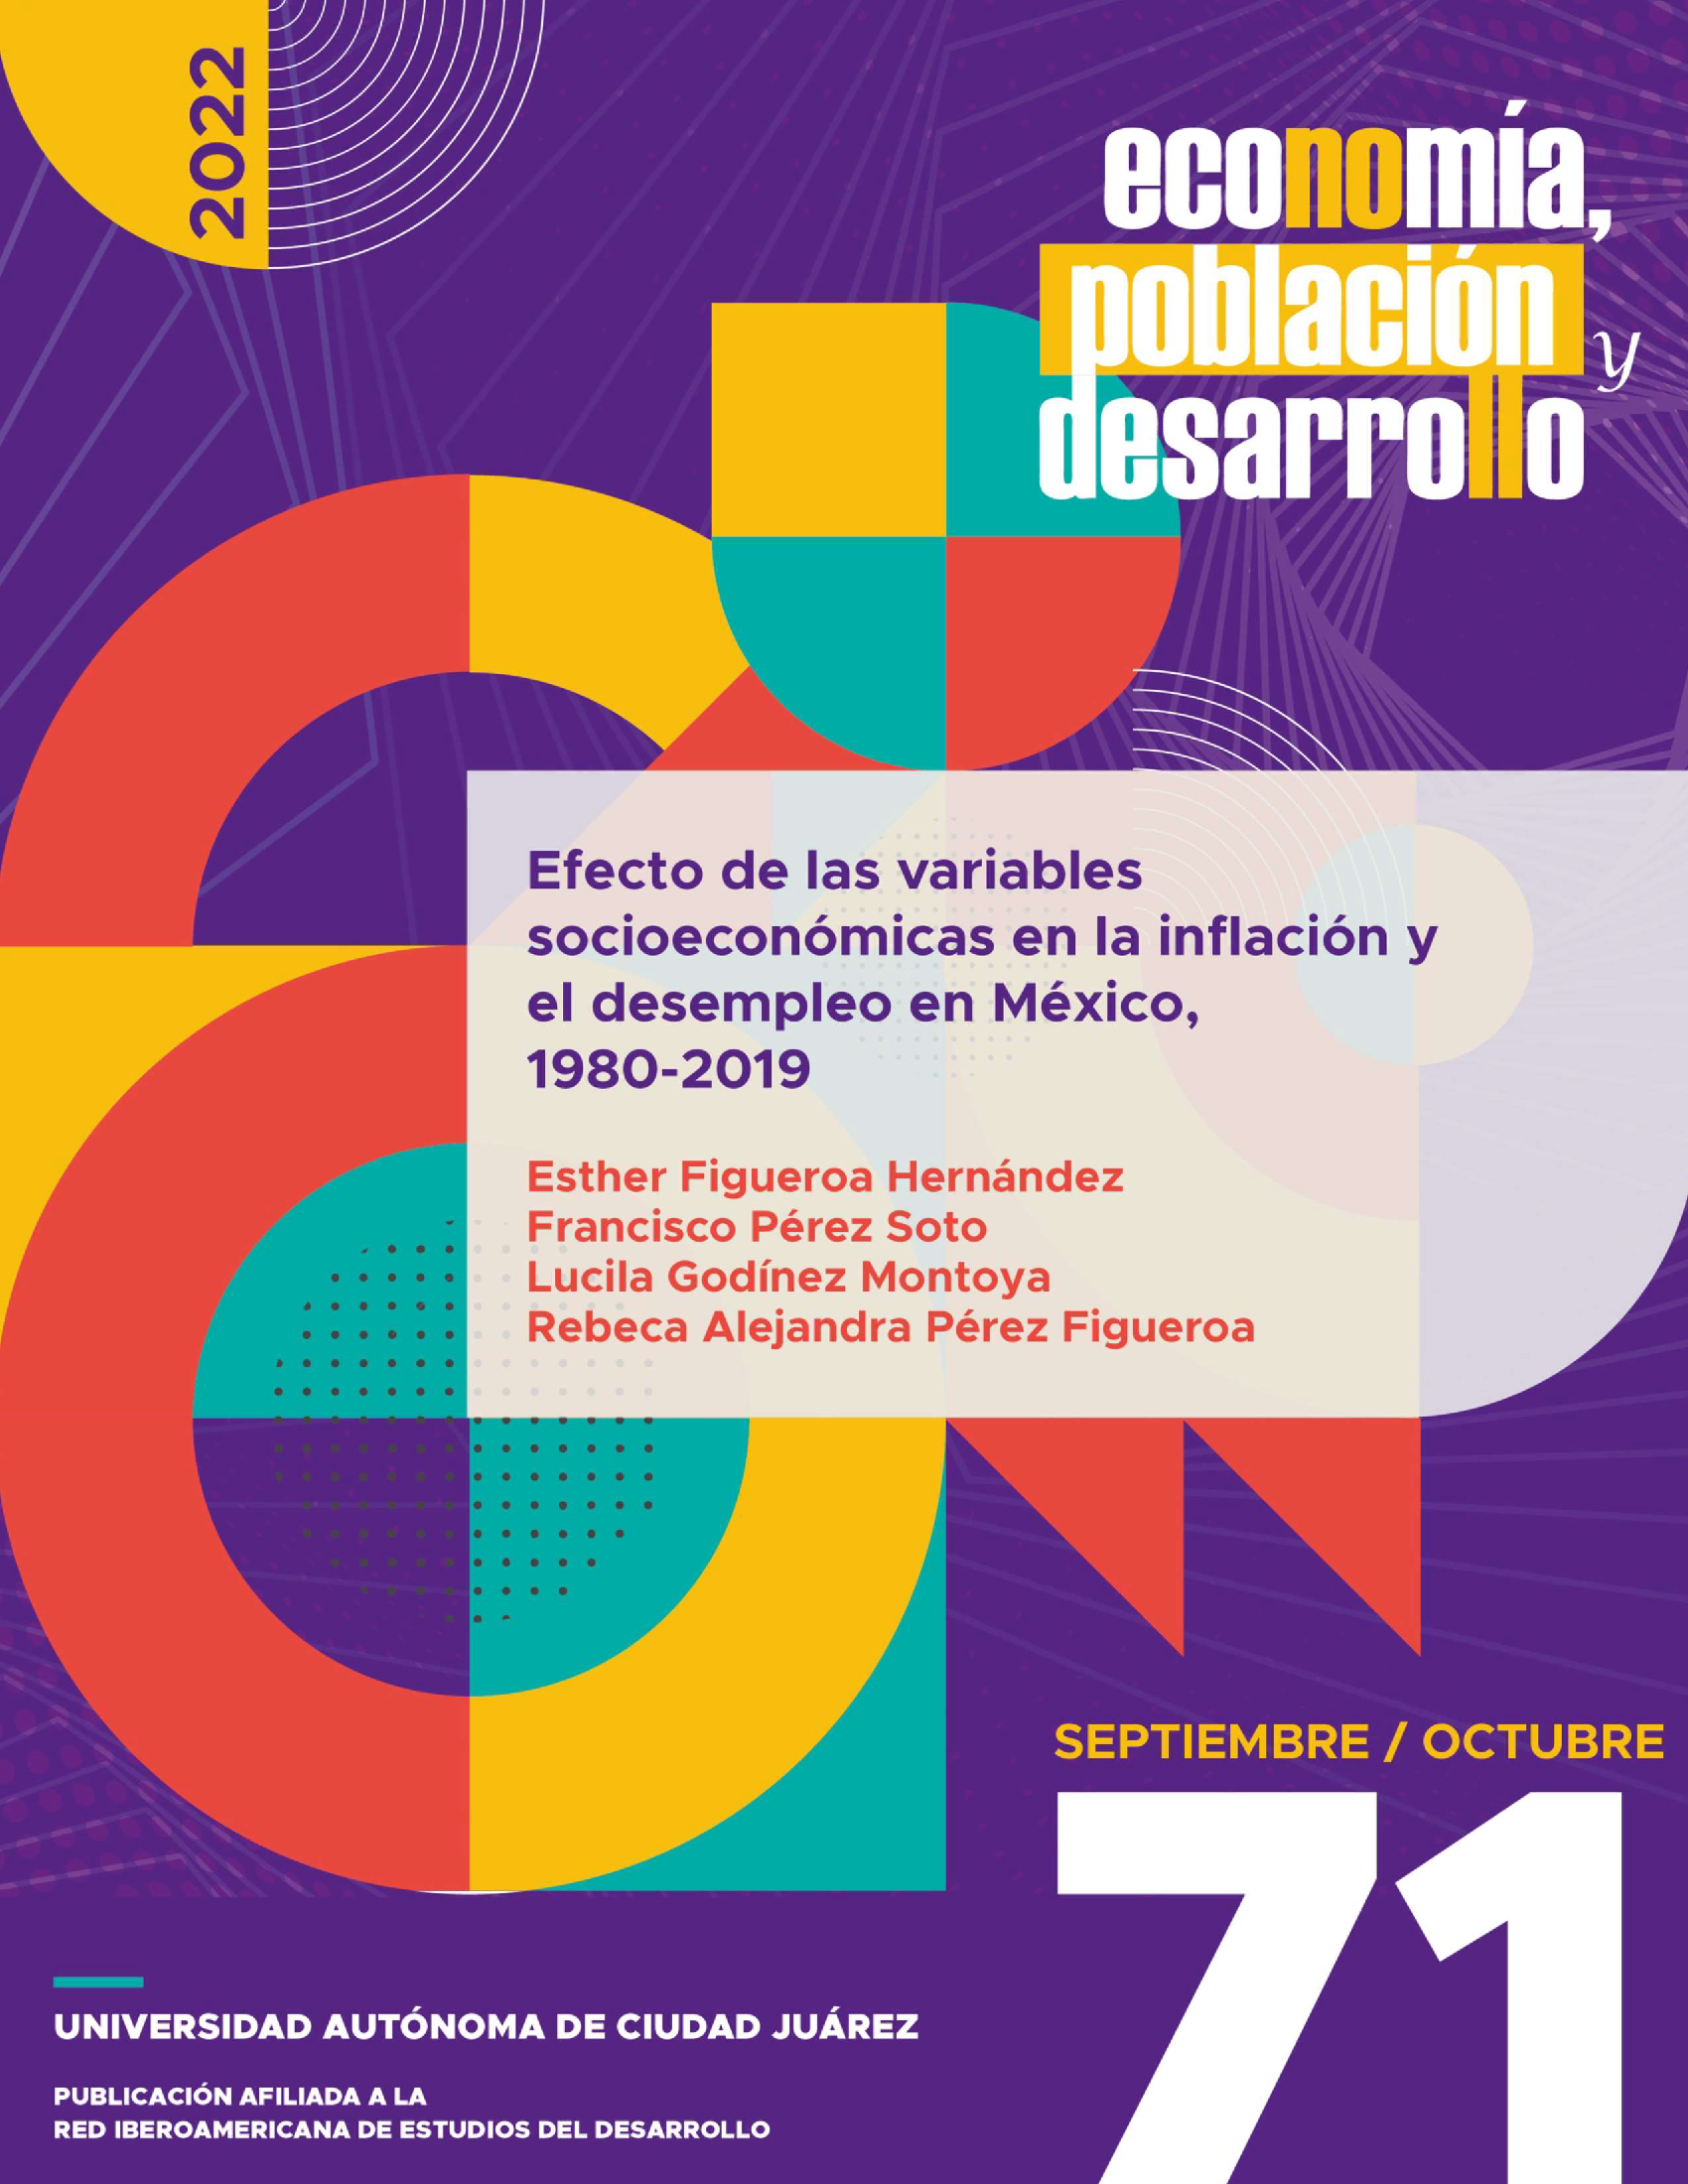 Efecto de las variables socioeconómicas en la inflación y el desempleo en México, 1980-2019